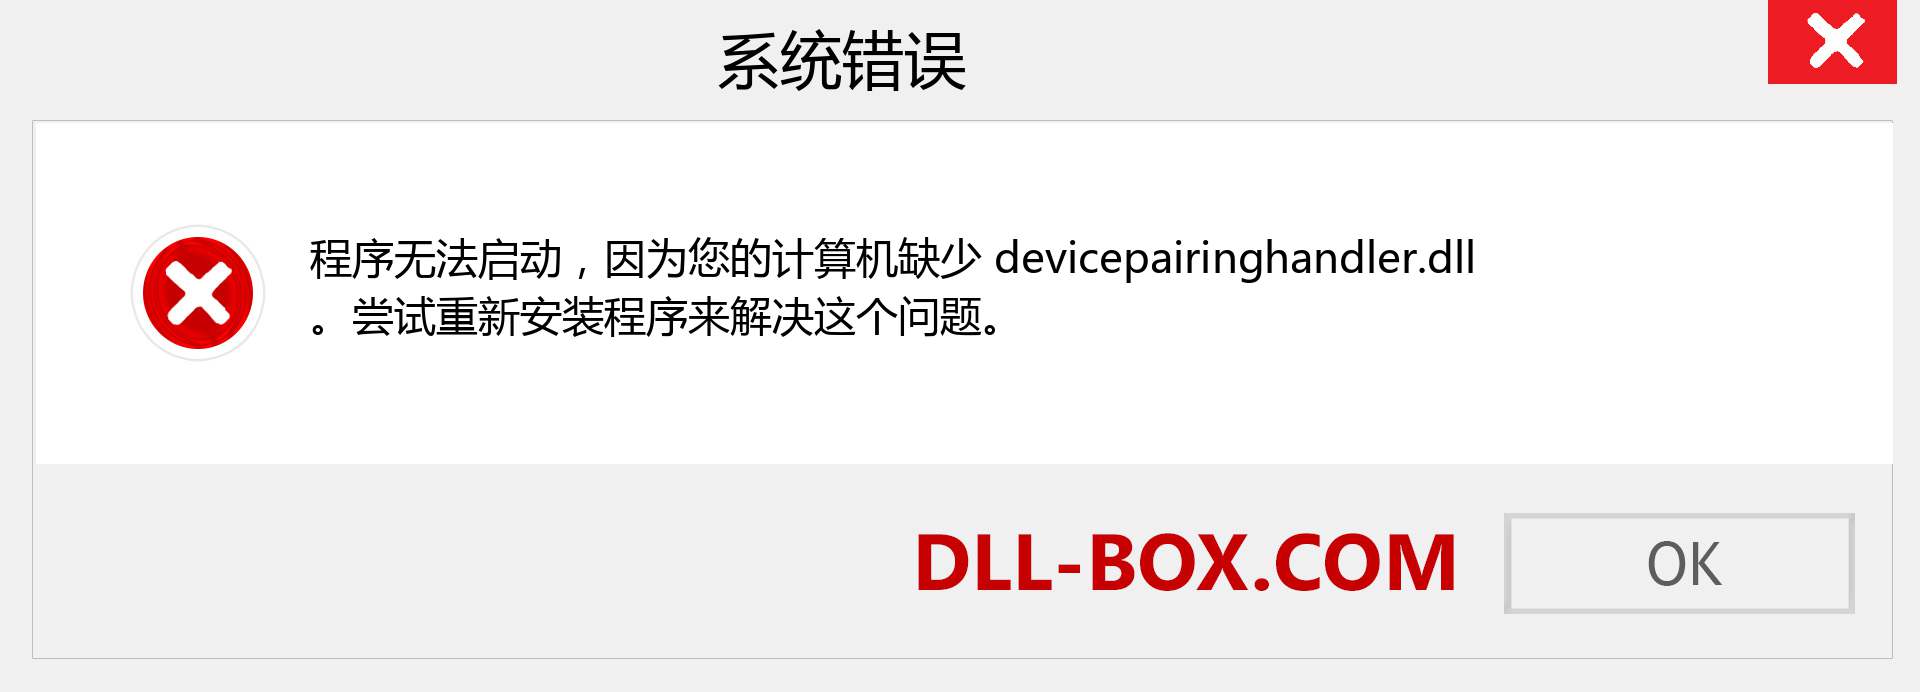 devicepairinghandler.dll 文件丢失？。 适用于 Windows 7、8、10 的下载 - 修复 Windows、照片、图像上的 devicepairinghandler dll 丢失错误